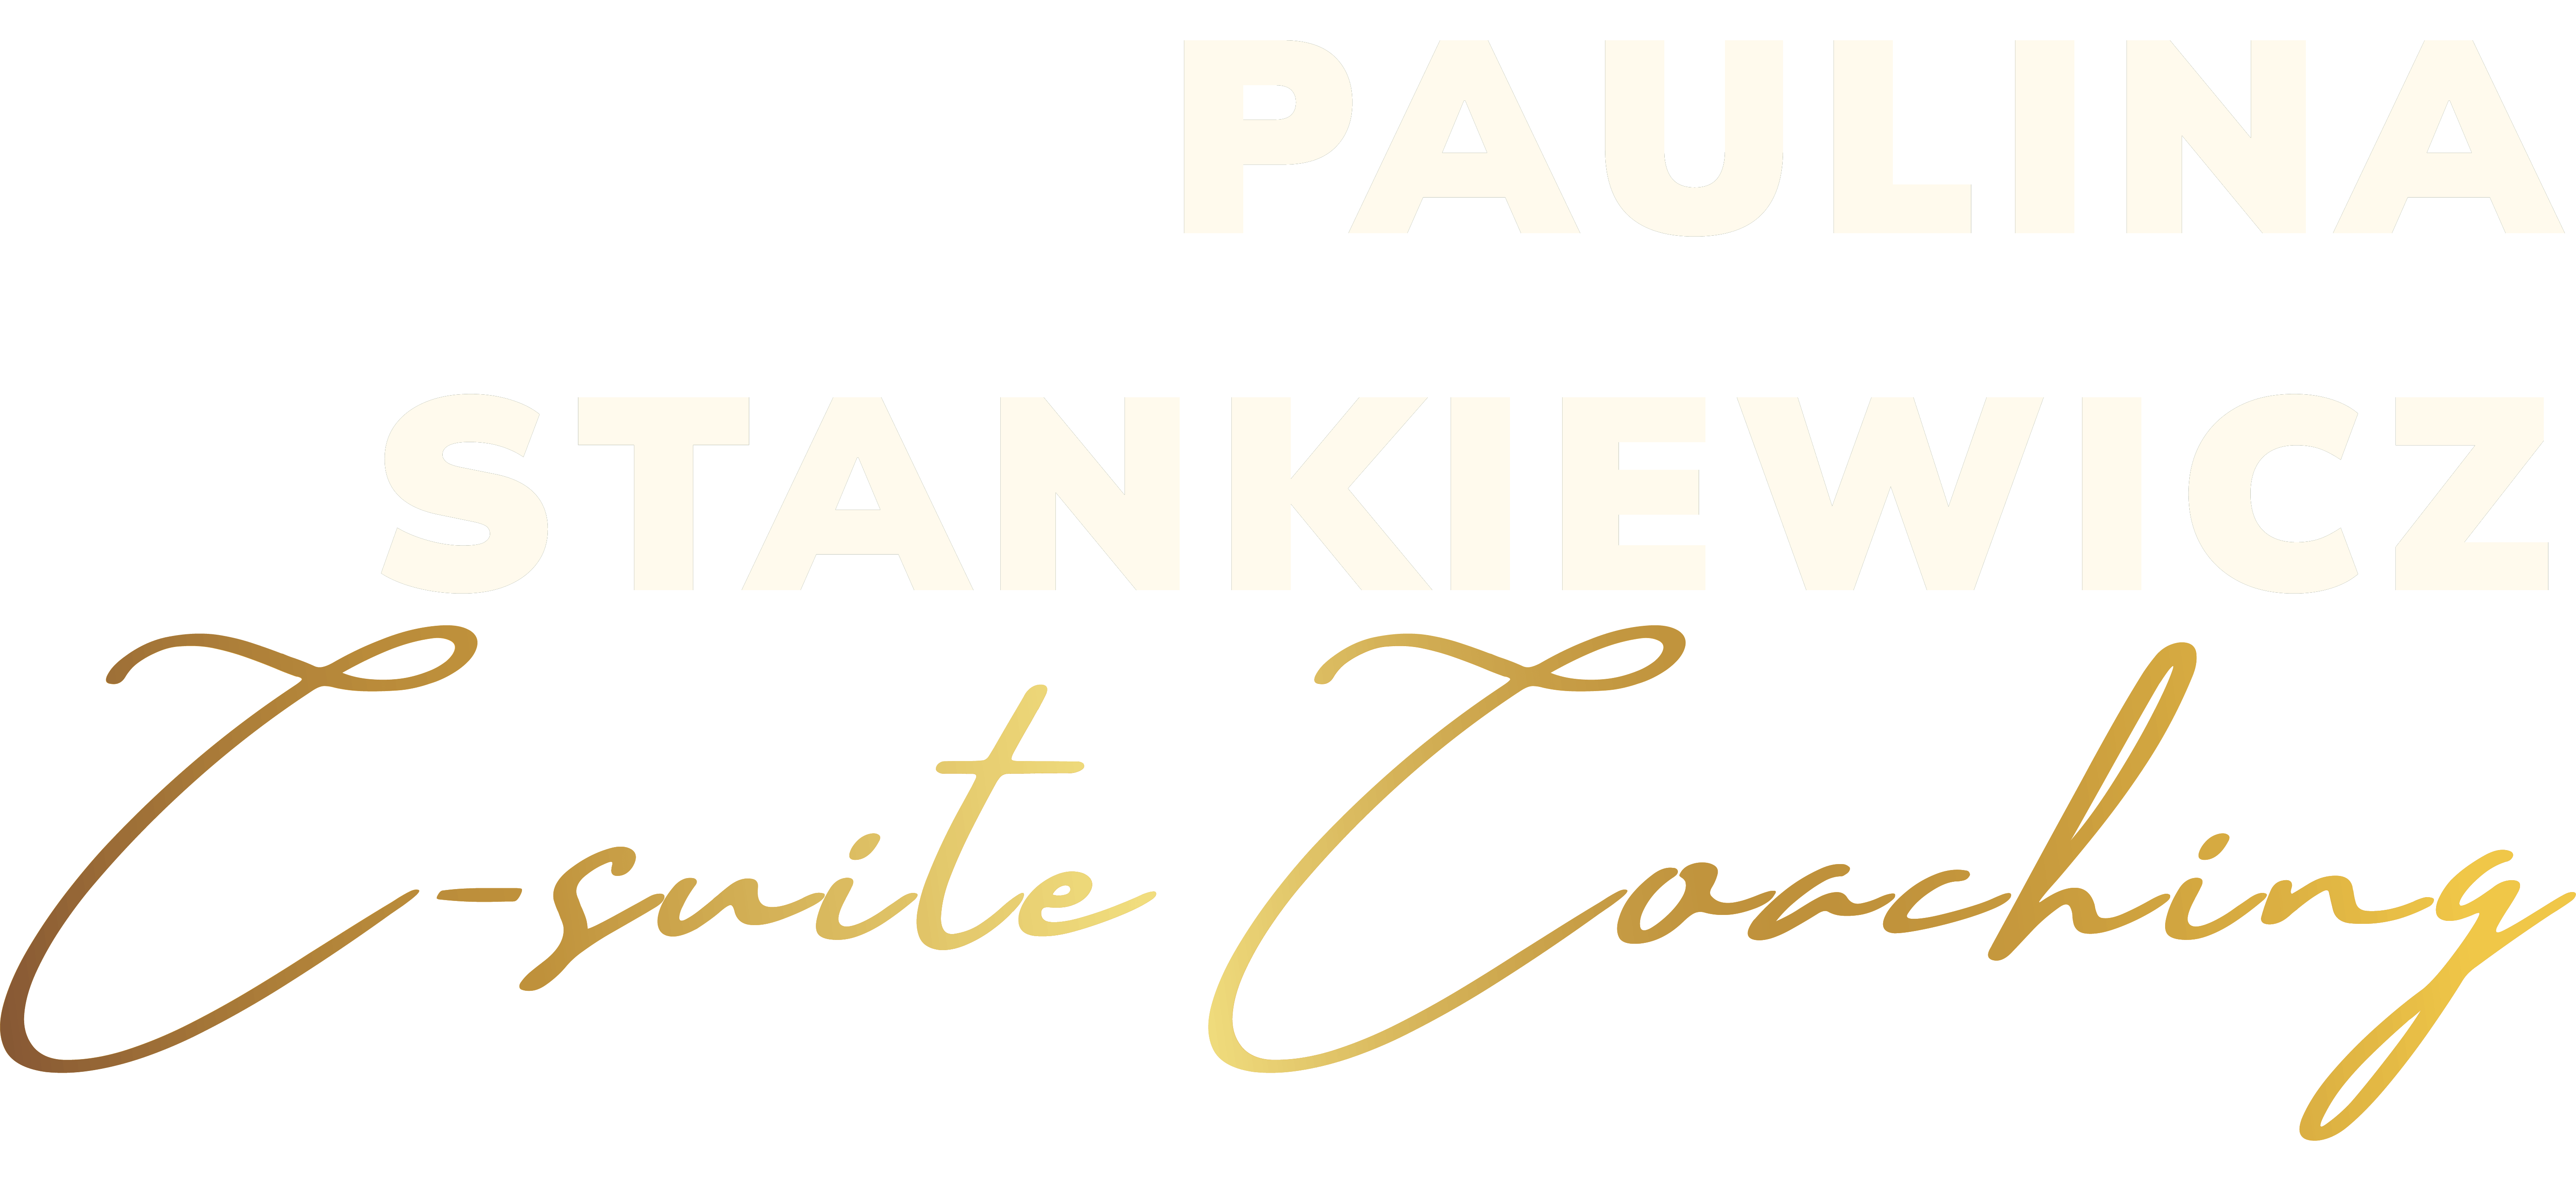 Paulina Stankiewicz C-suite Coaching Logo